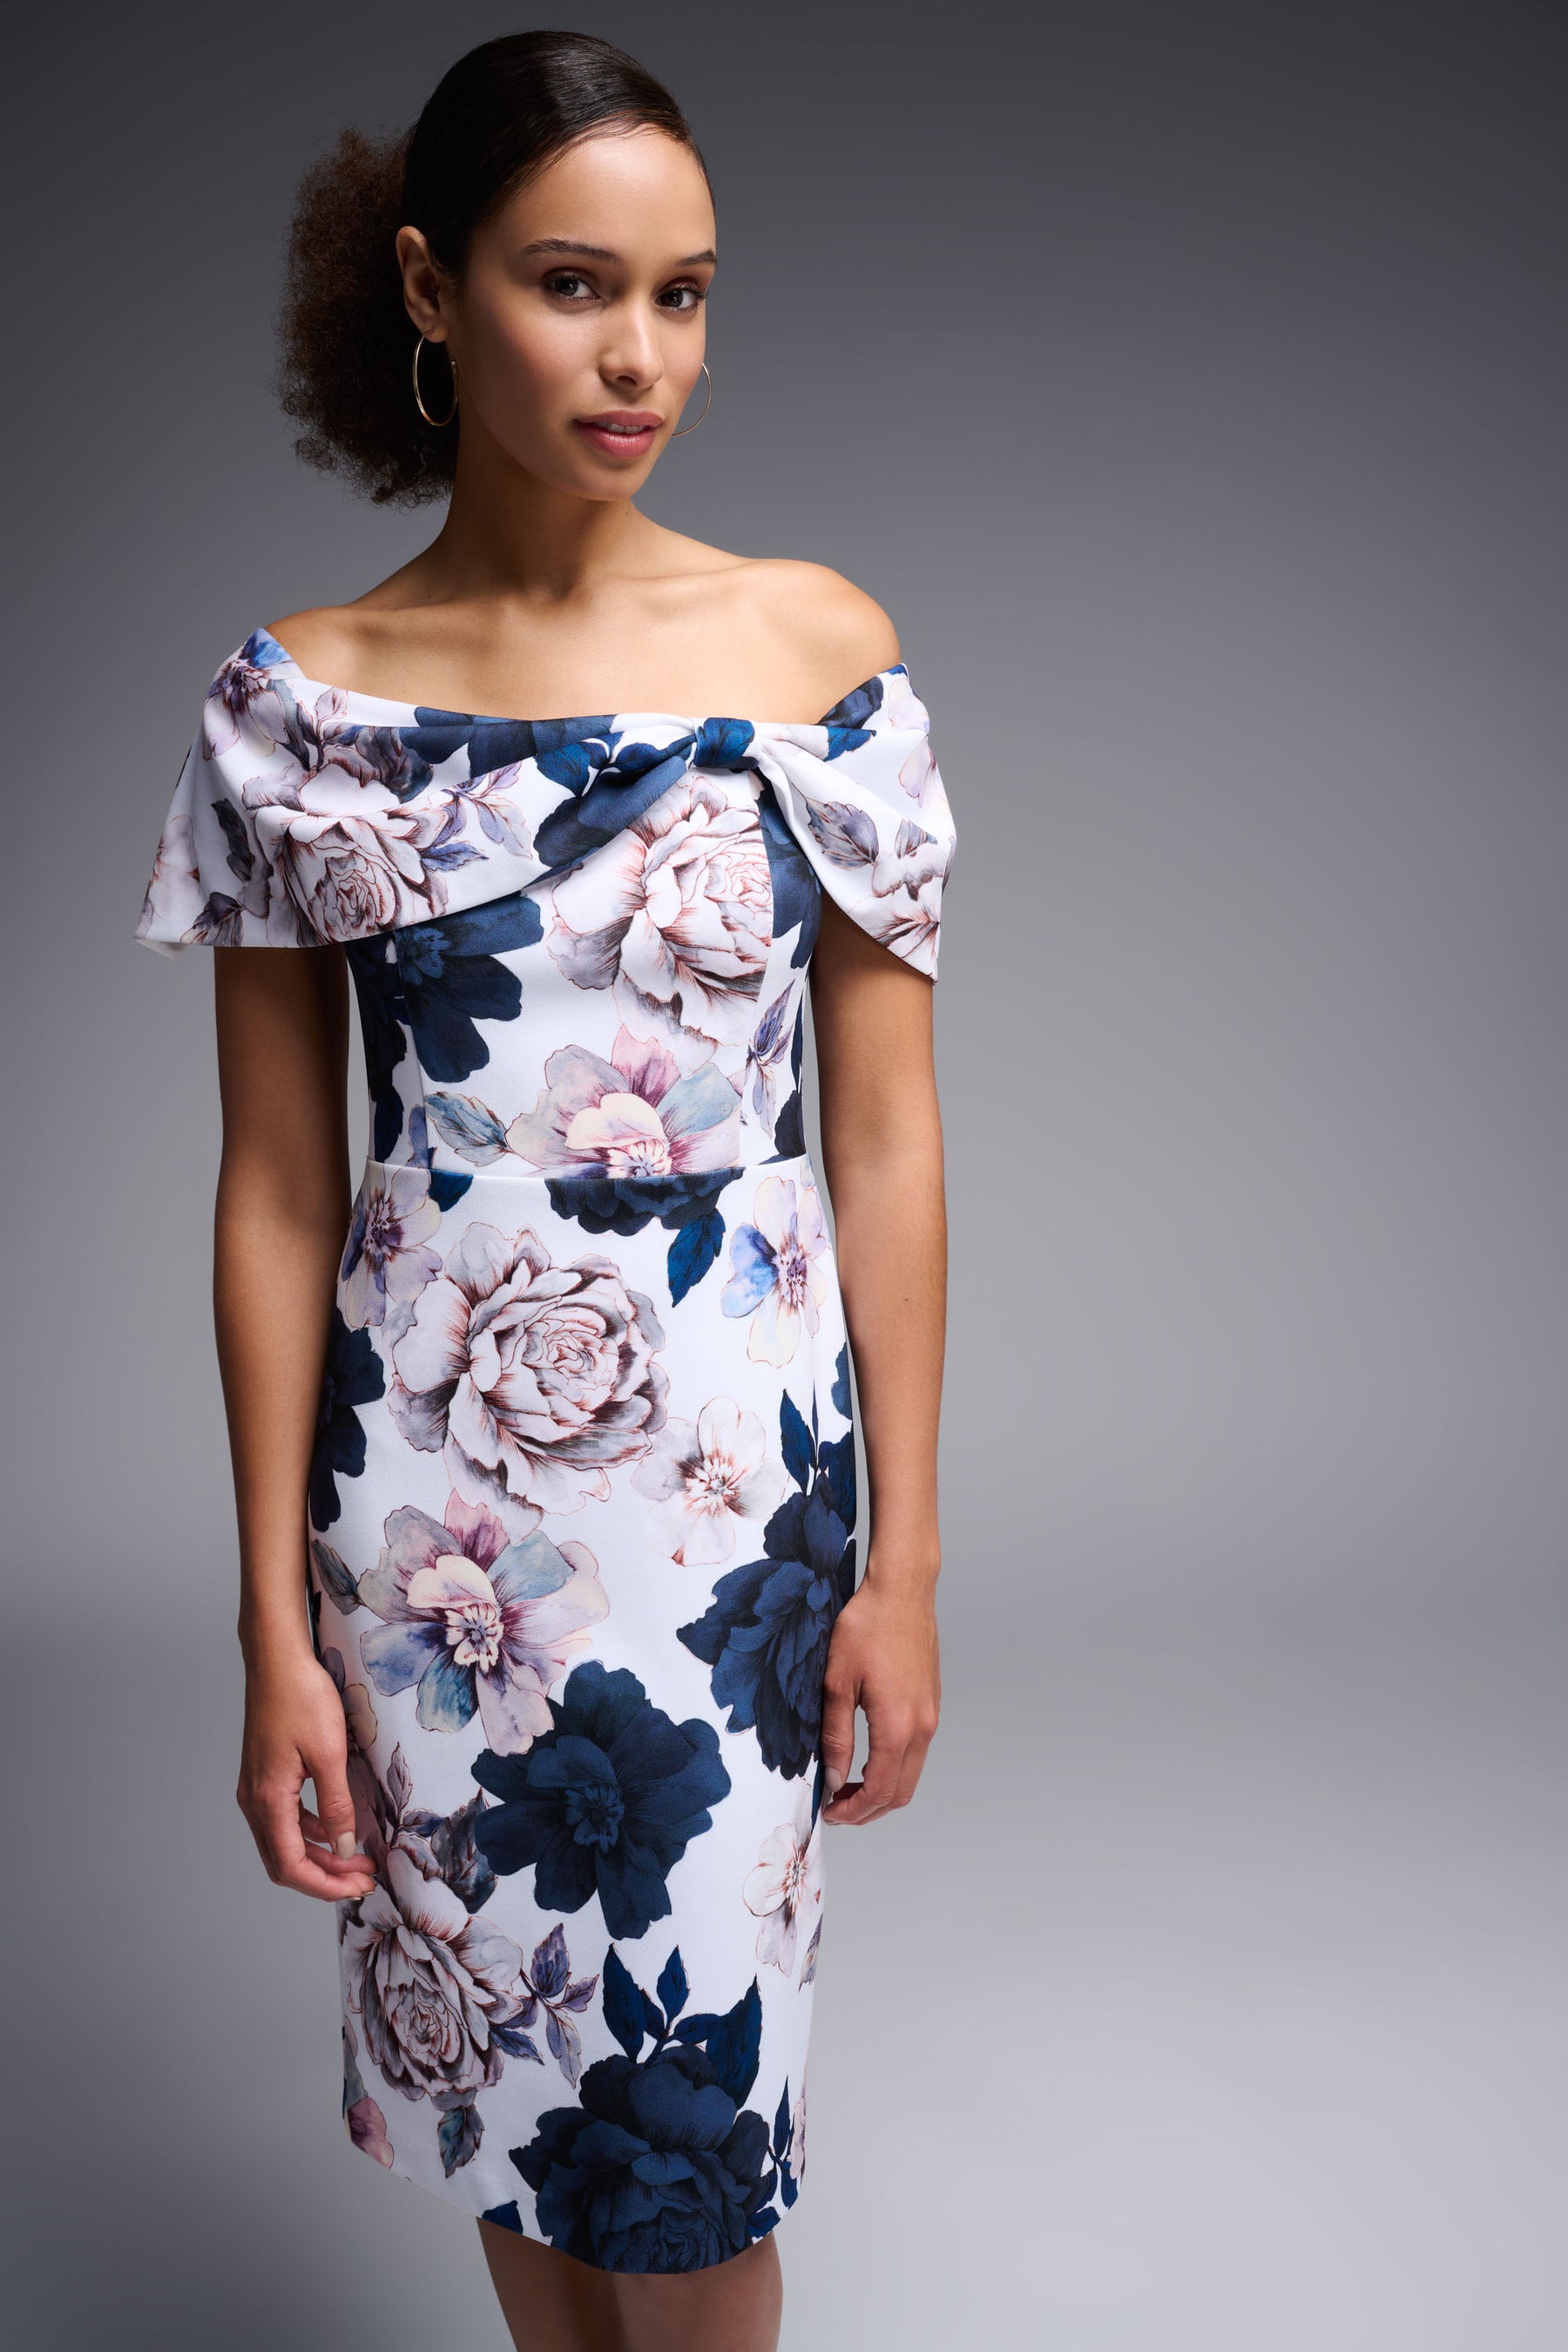 Floral Print Off Shoulder Dress